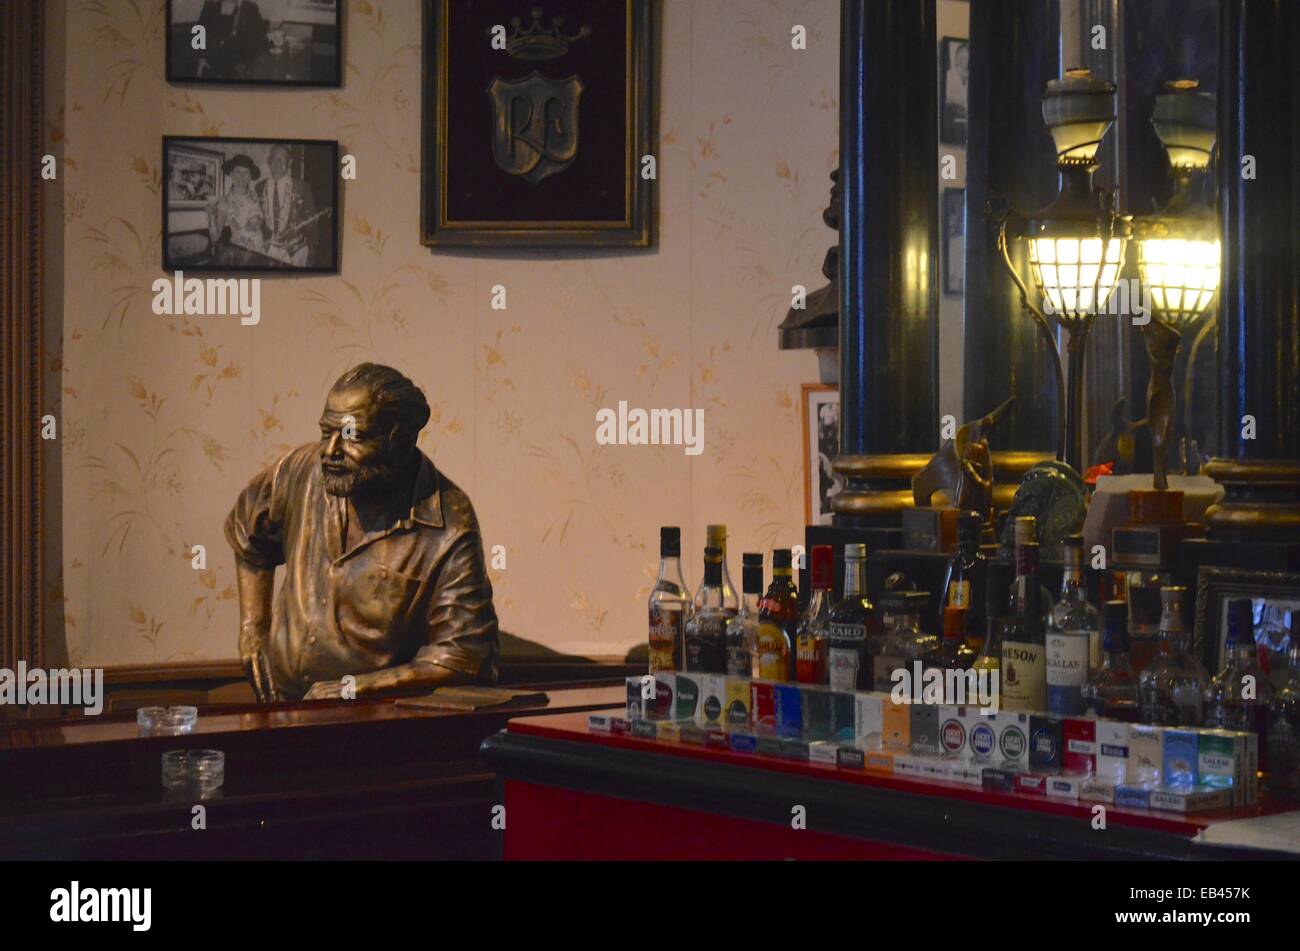 El Floridita bar a l'Avana vecchia. Un preferito bere spot di Ernest Hemingway e la casa del daiquiri e Mojito Foto Stock